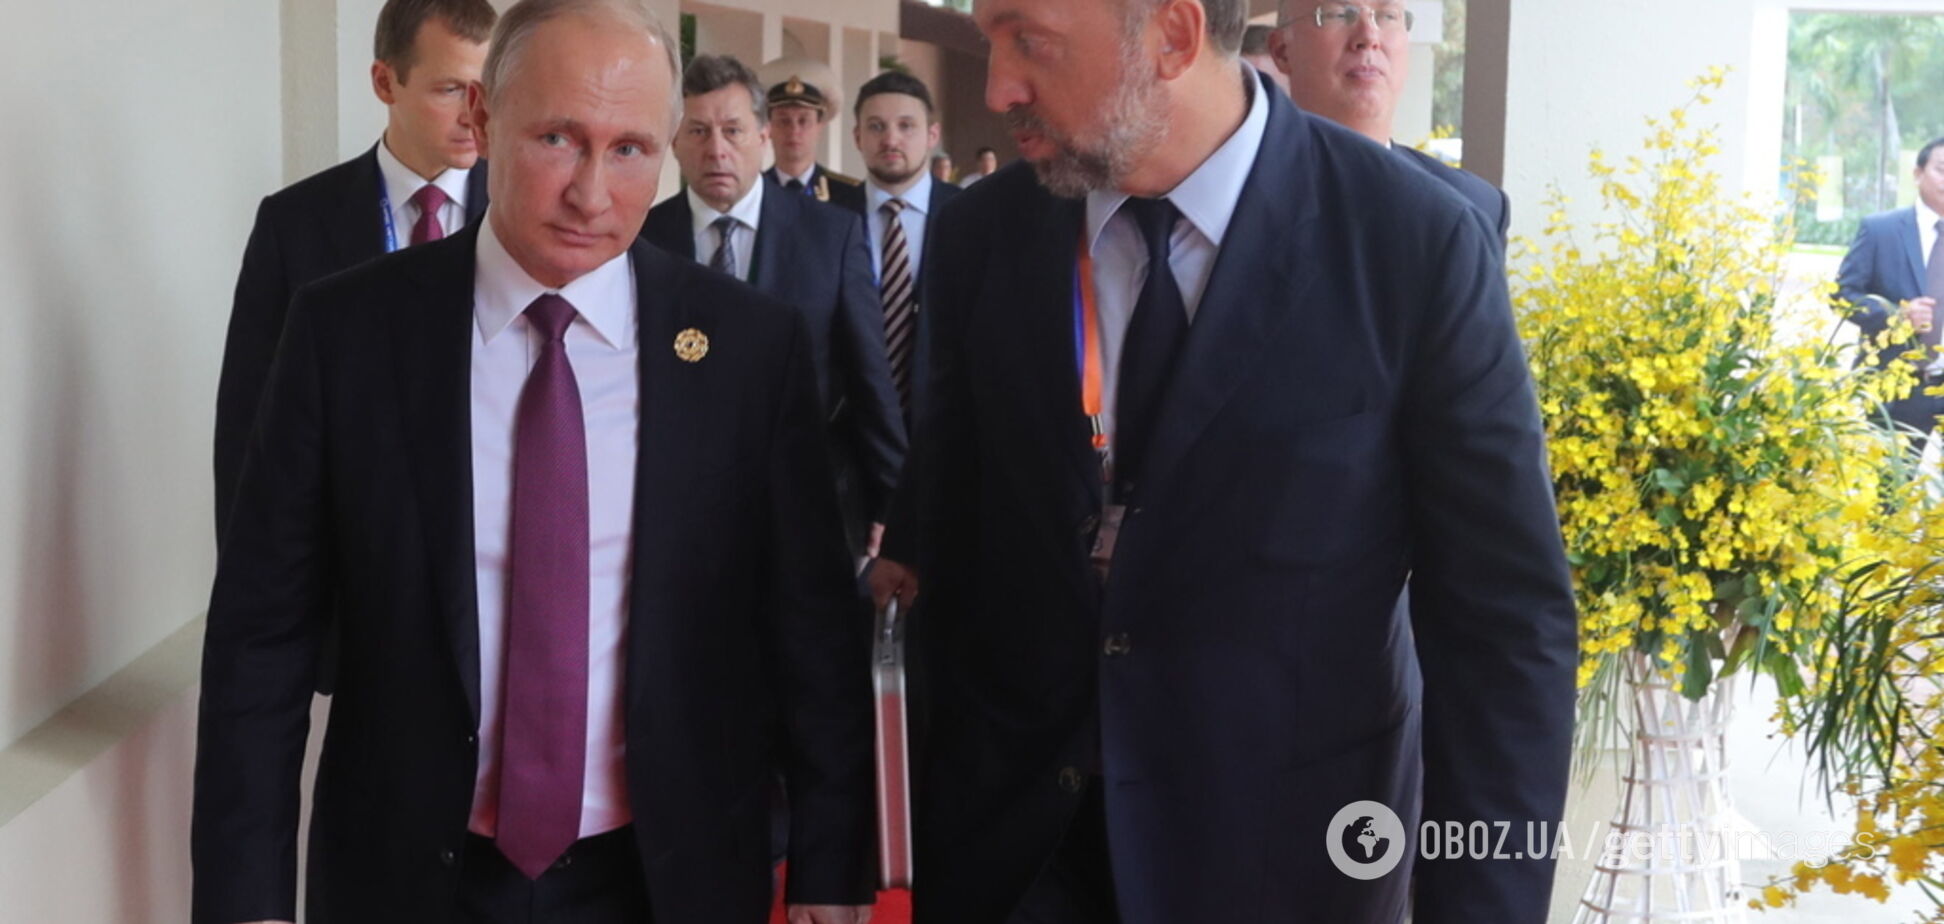 США пошли на серьезные уступки другу Путина в вопросе санкций: что произошло